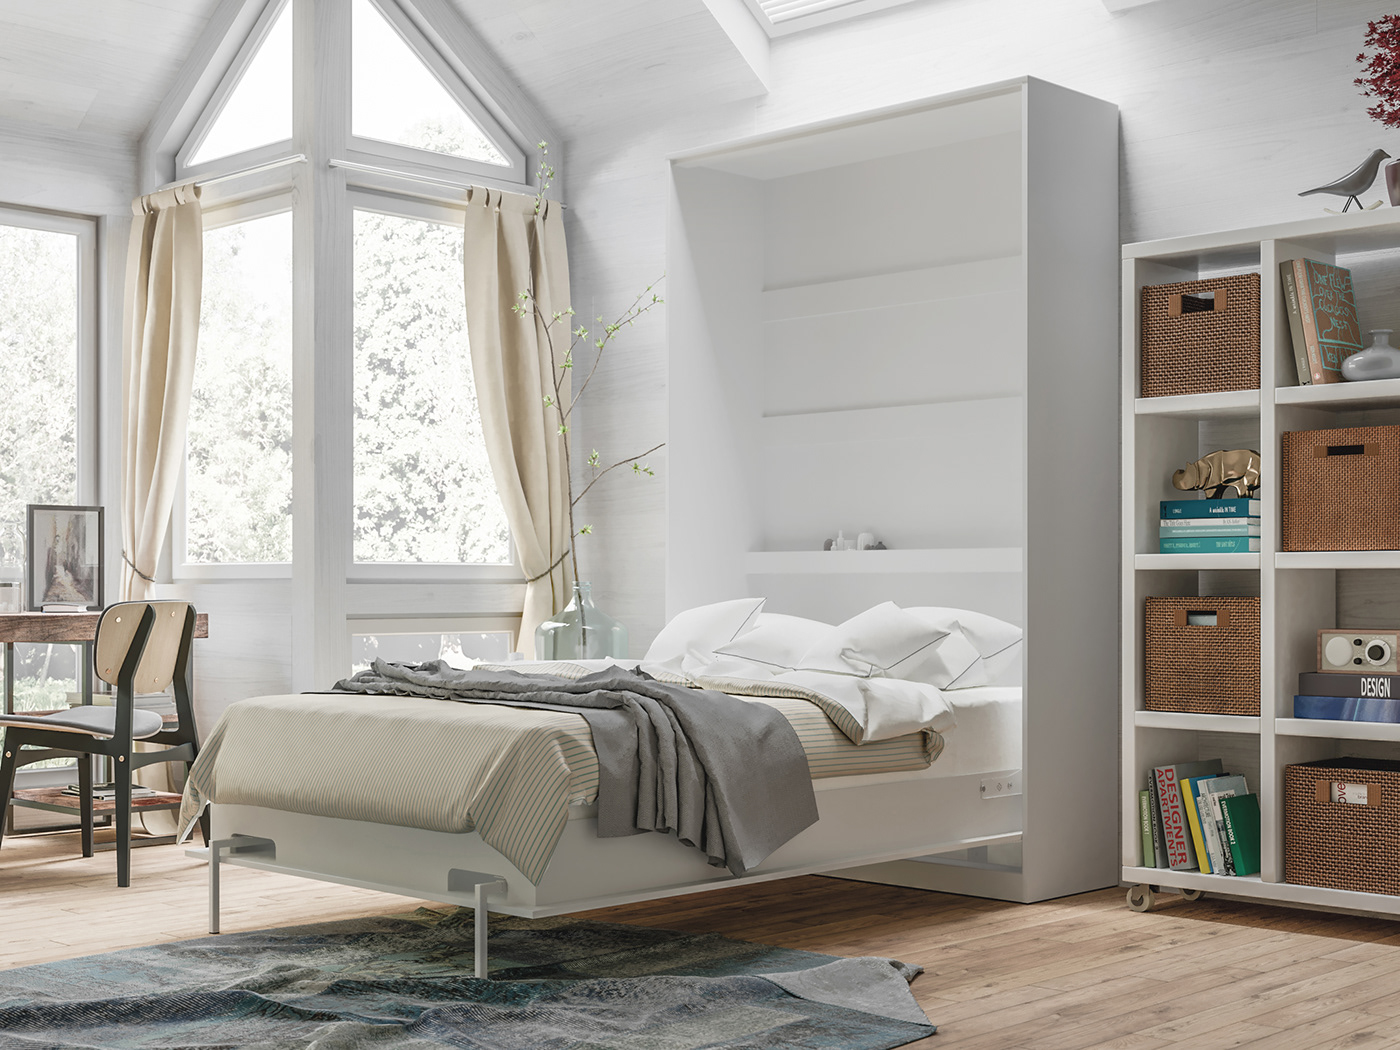 murphybed wallbed schrankbett bed design furnituredesign furniture Interior